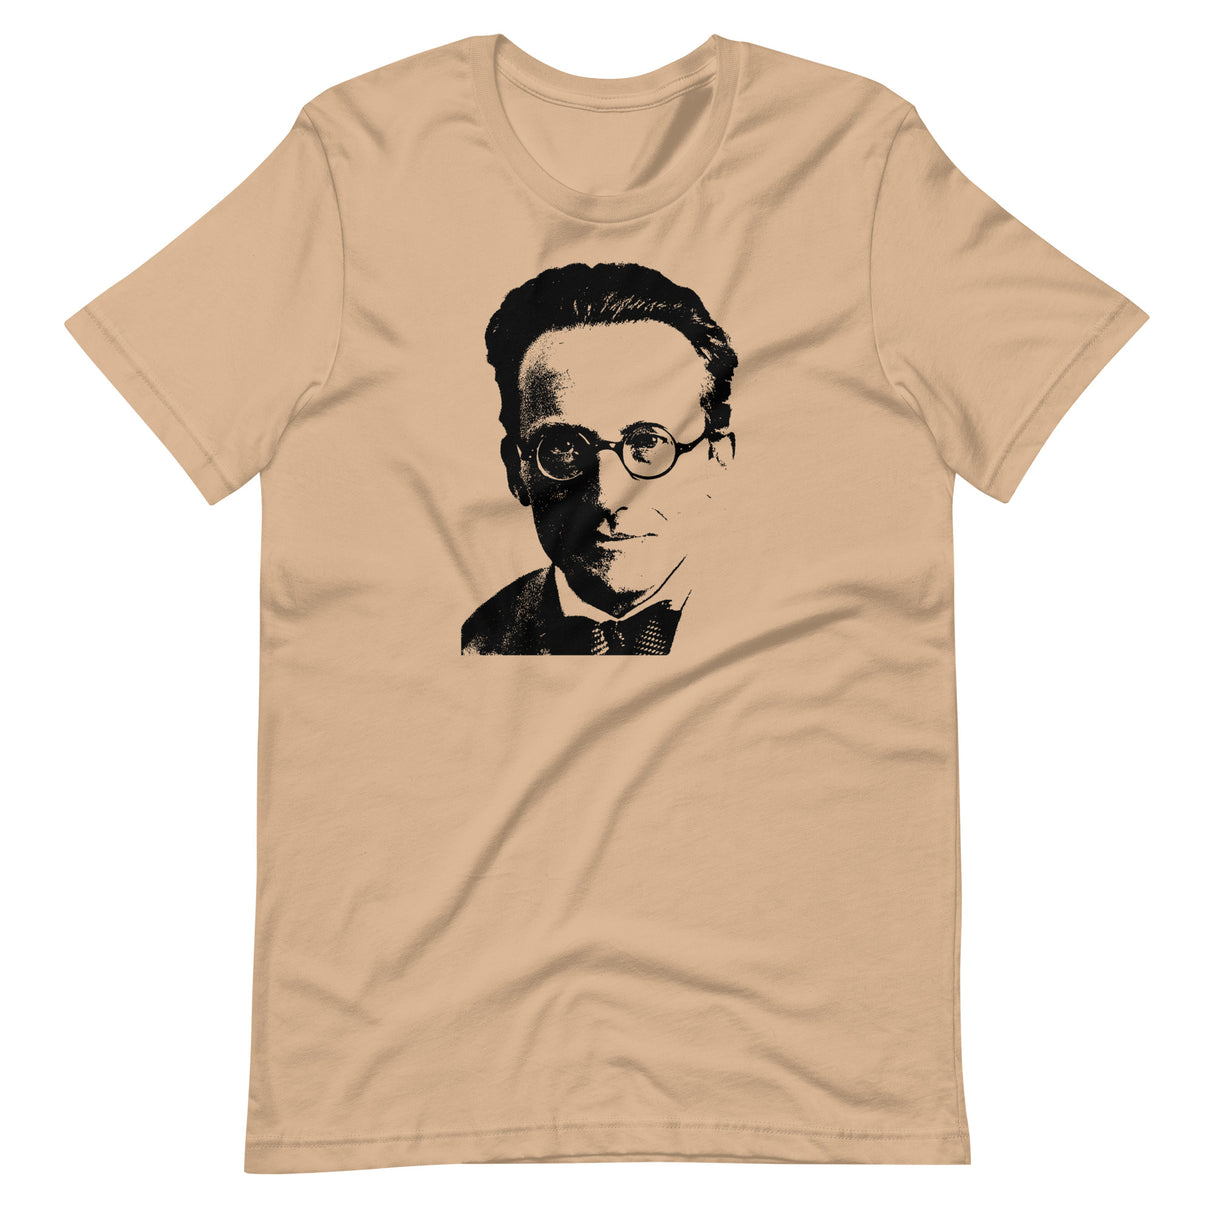 Erwin Schrödinger Shirt